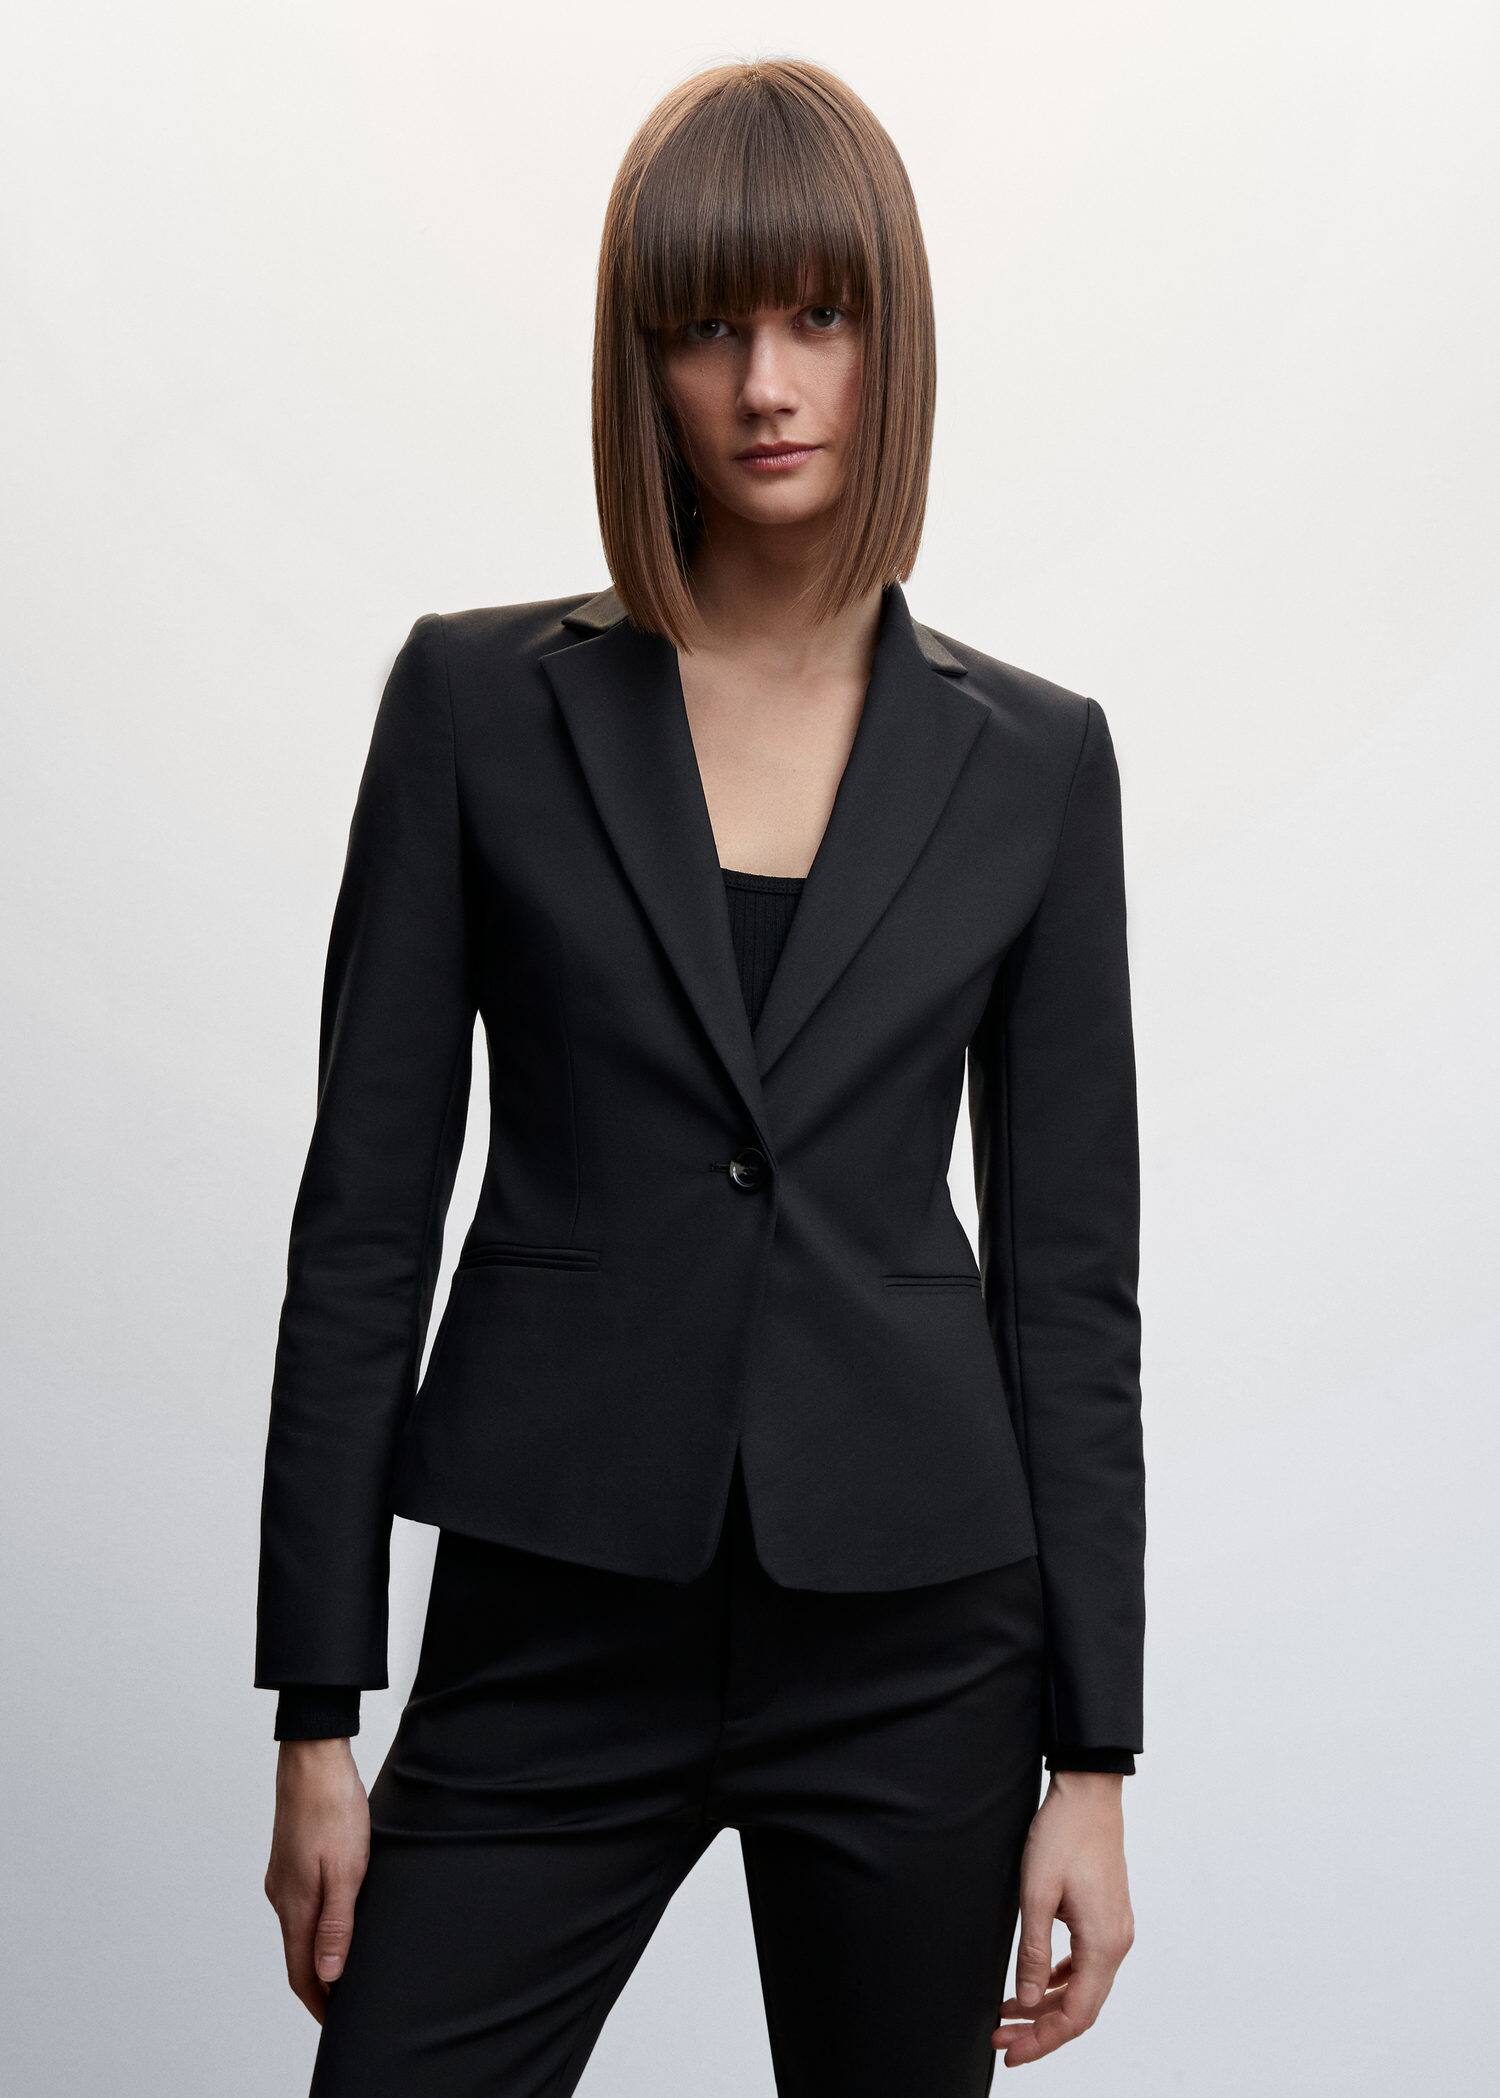 Structured suit blazer - Plan mediu